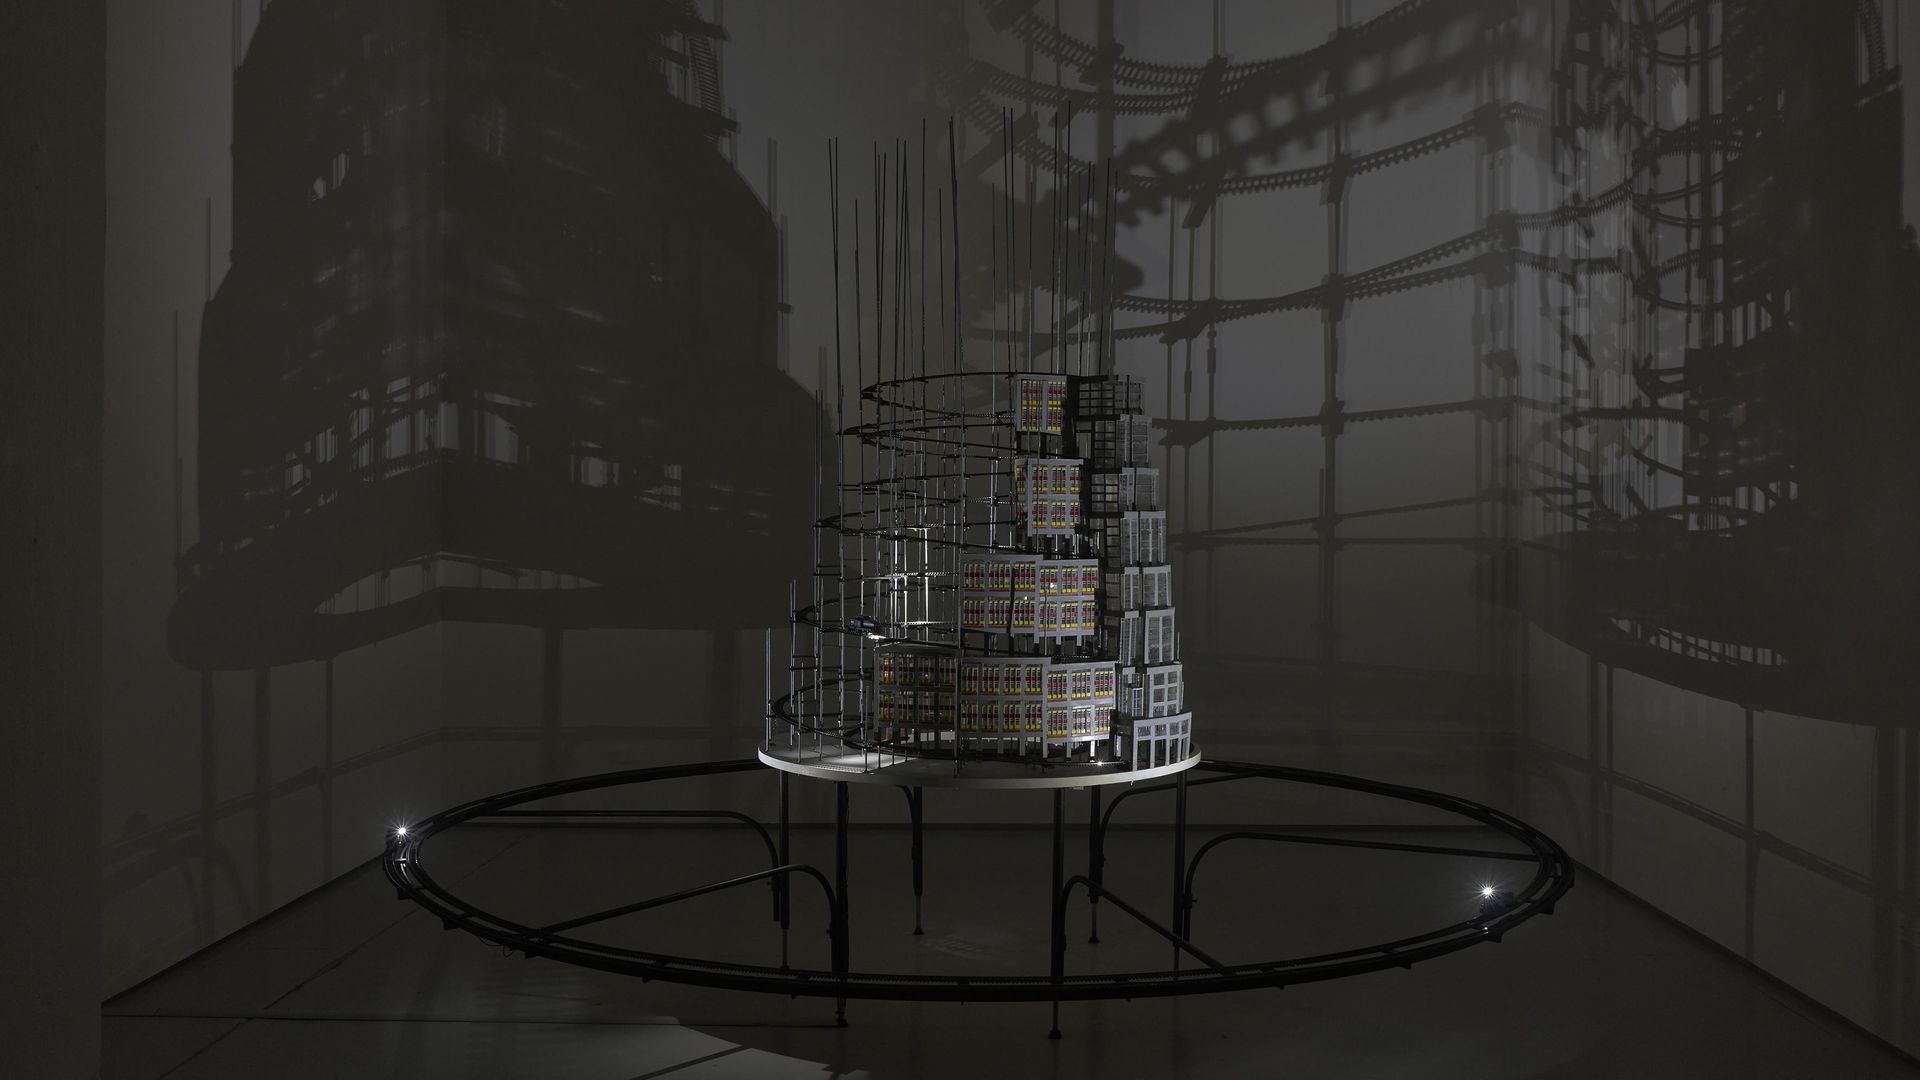 Clemens Fürtler, Turm zu Babel (Bildmaschine 08), 2017-18, Installation view in KAI 10 | Arthena Foundation, Courtesy the artist, Photo: Achim Kukulies